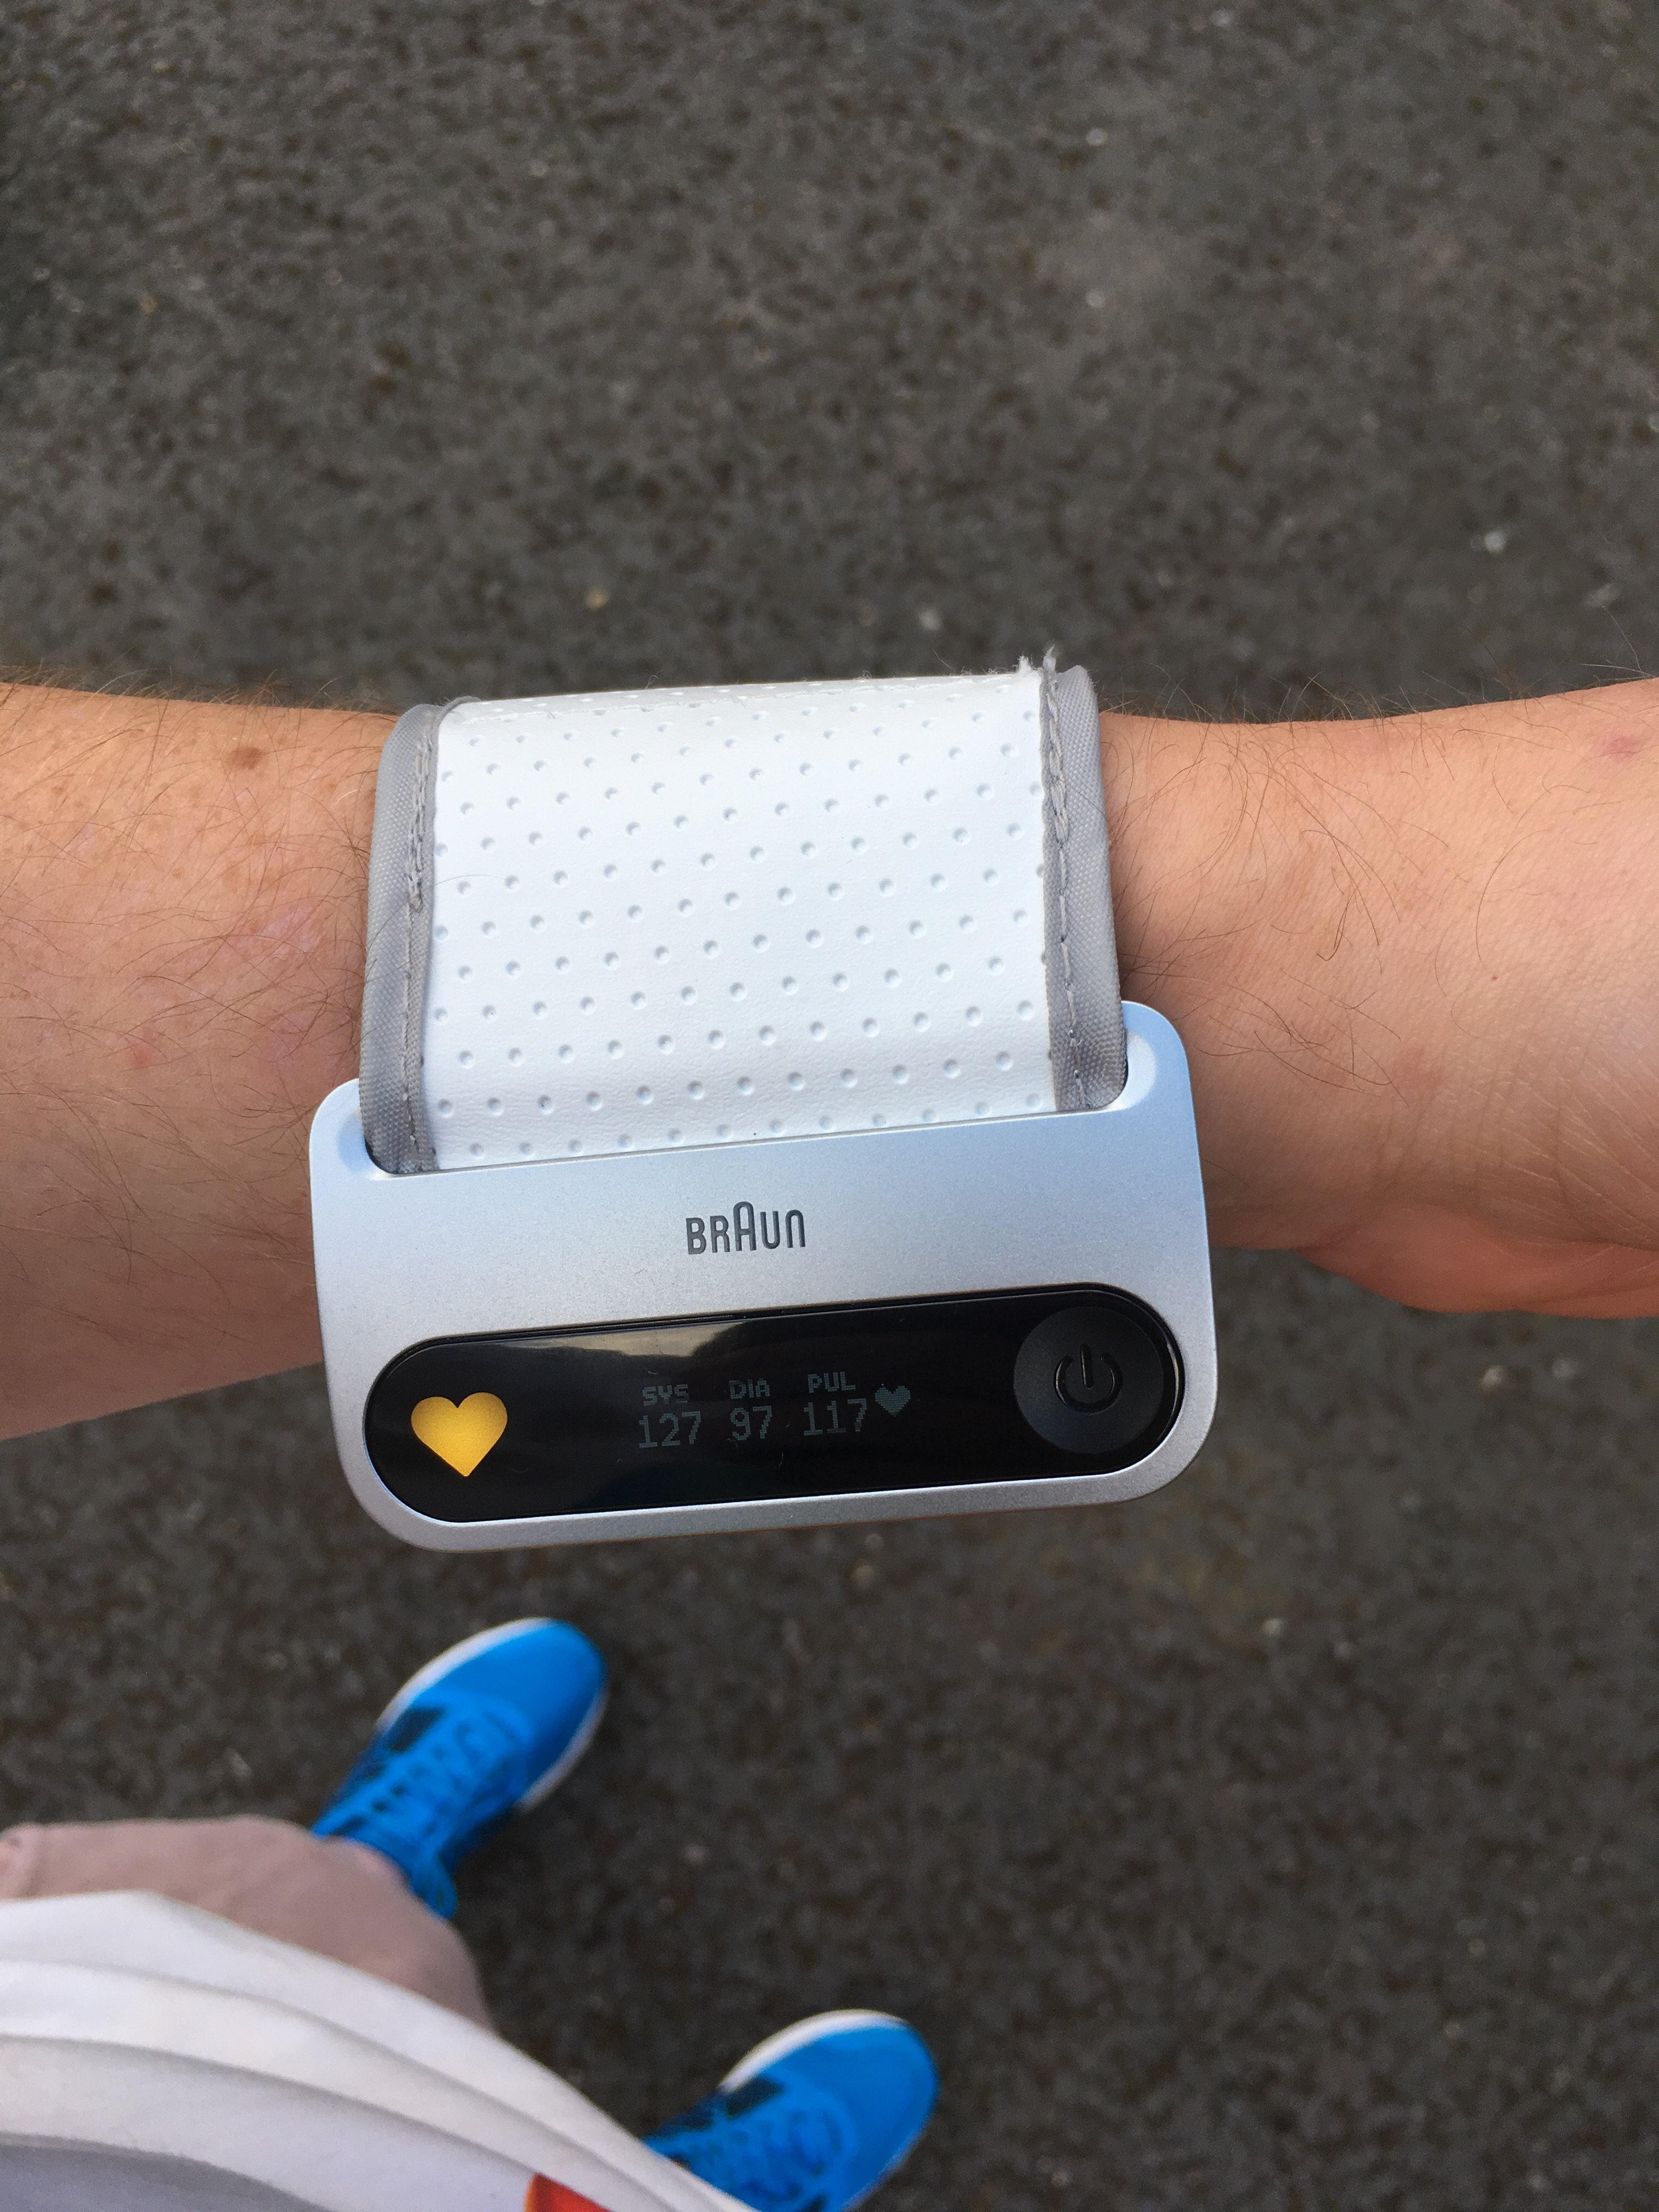 Braun iCheck 7 Wrist Blood Pressure Monitor on arm